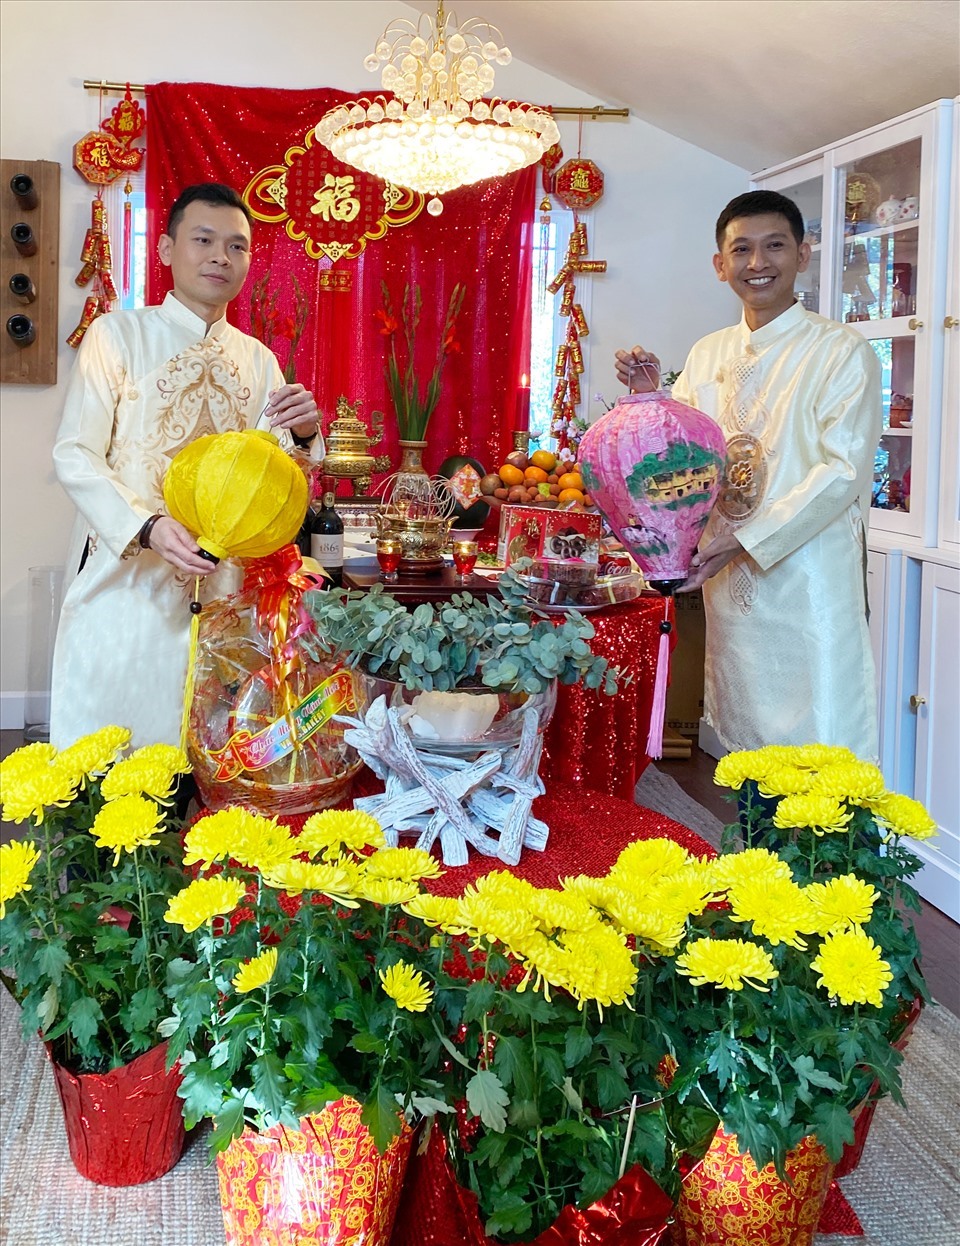 MC Gia Thành và đạo diễn Huỳnh Tuấn Anh bên bàn thờ ngày Tết tại nhà ca sĩ Nguyễn Hồng Nhung. Ảnh: NSCC.